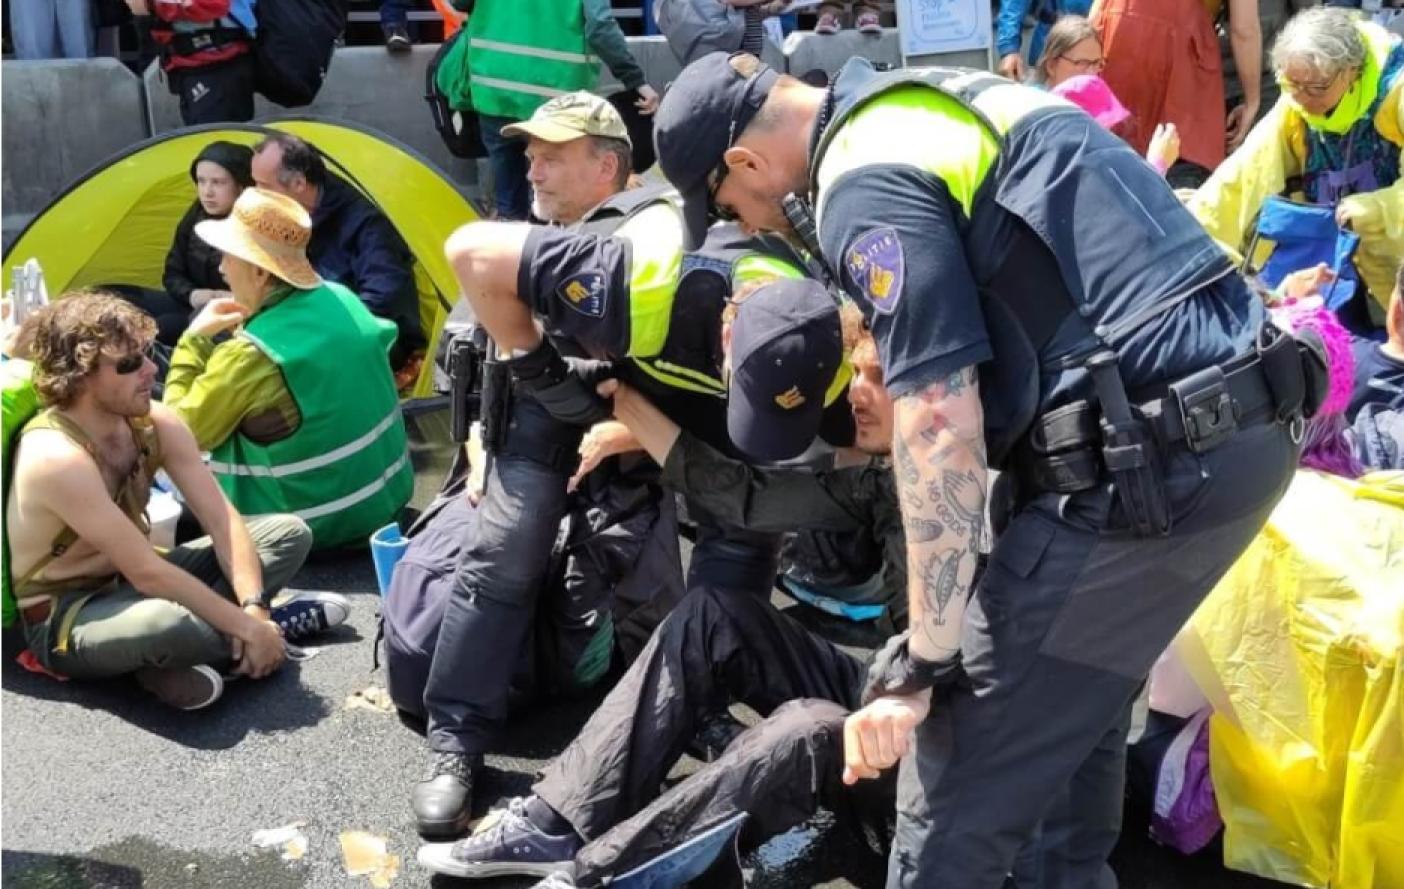  荷蘭警方表示，跨國環保團體「反抗滅絕」27日在海牙發動示威，共有1500多人被捕。翻攝NLRebellion推特